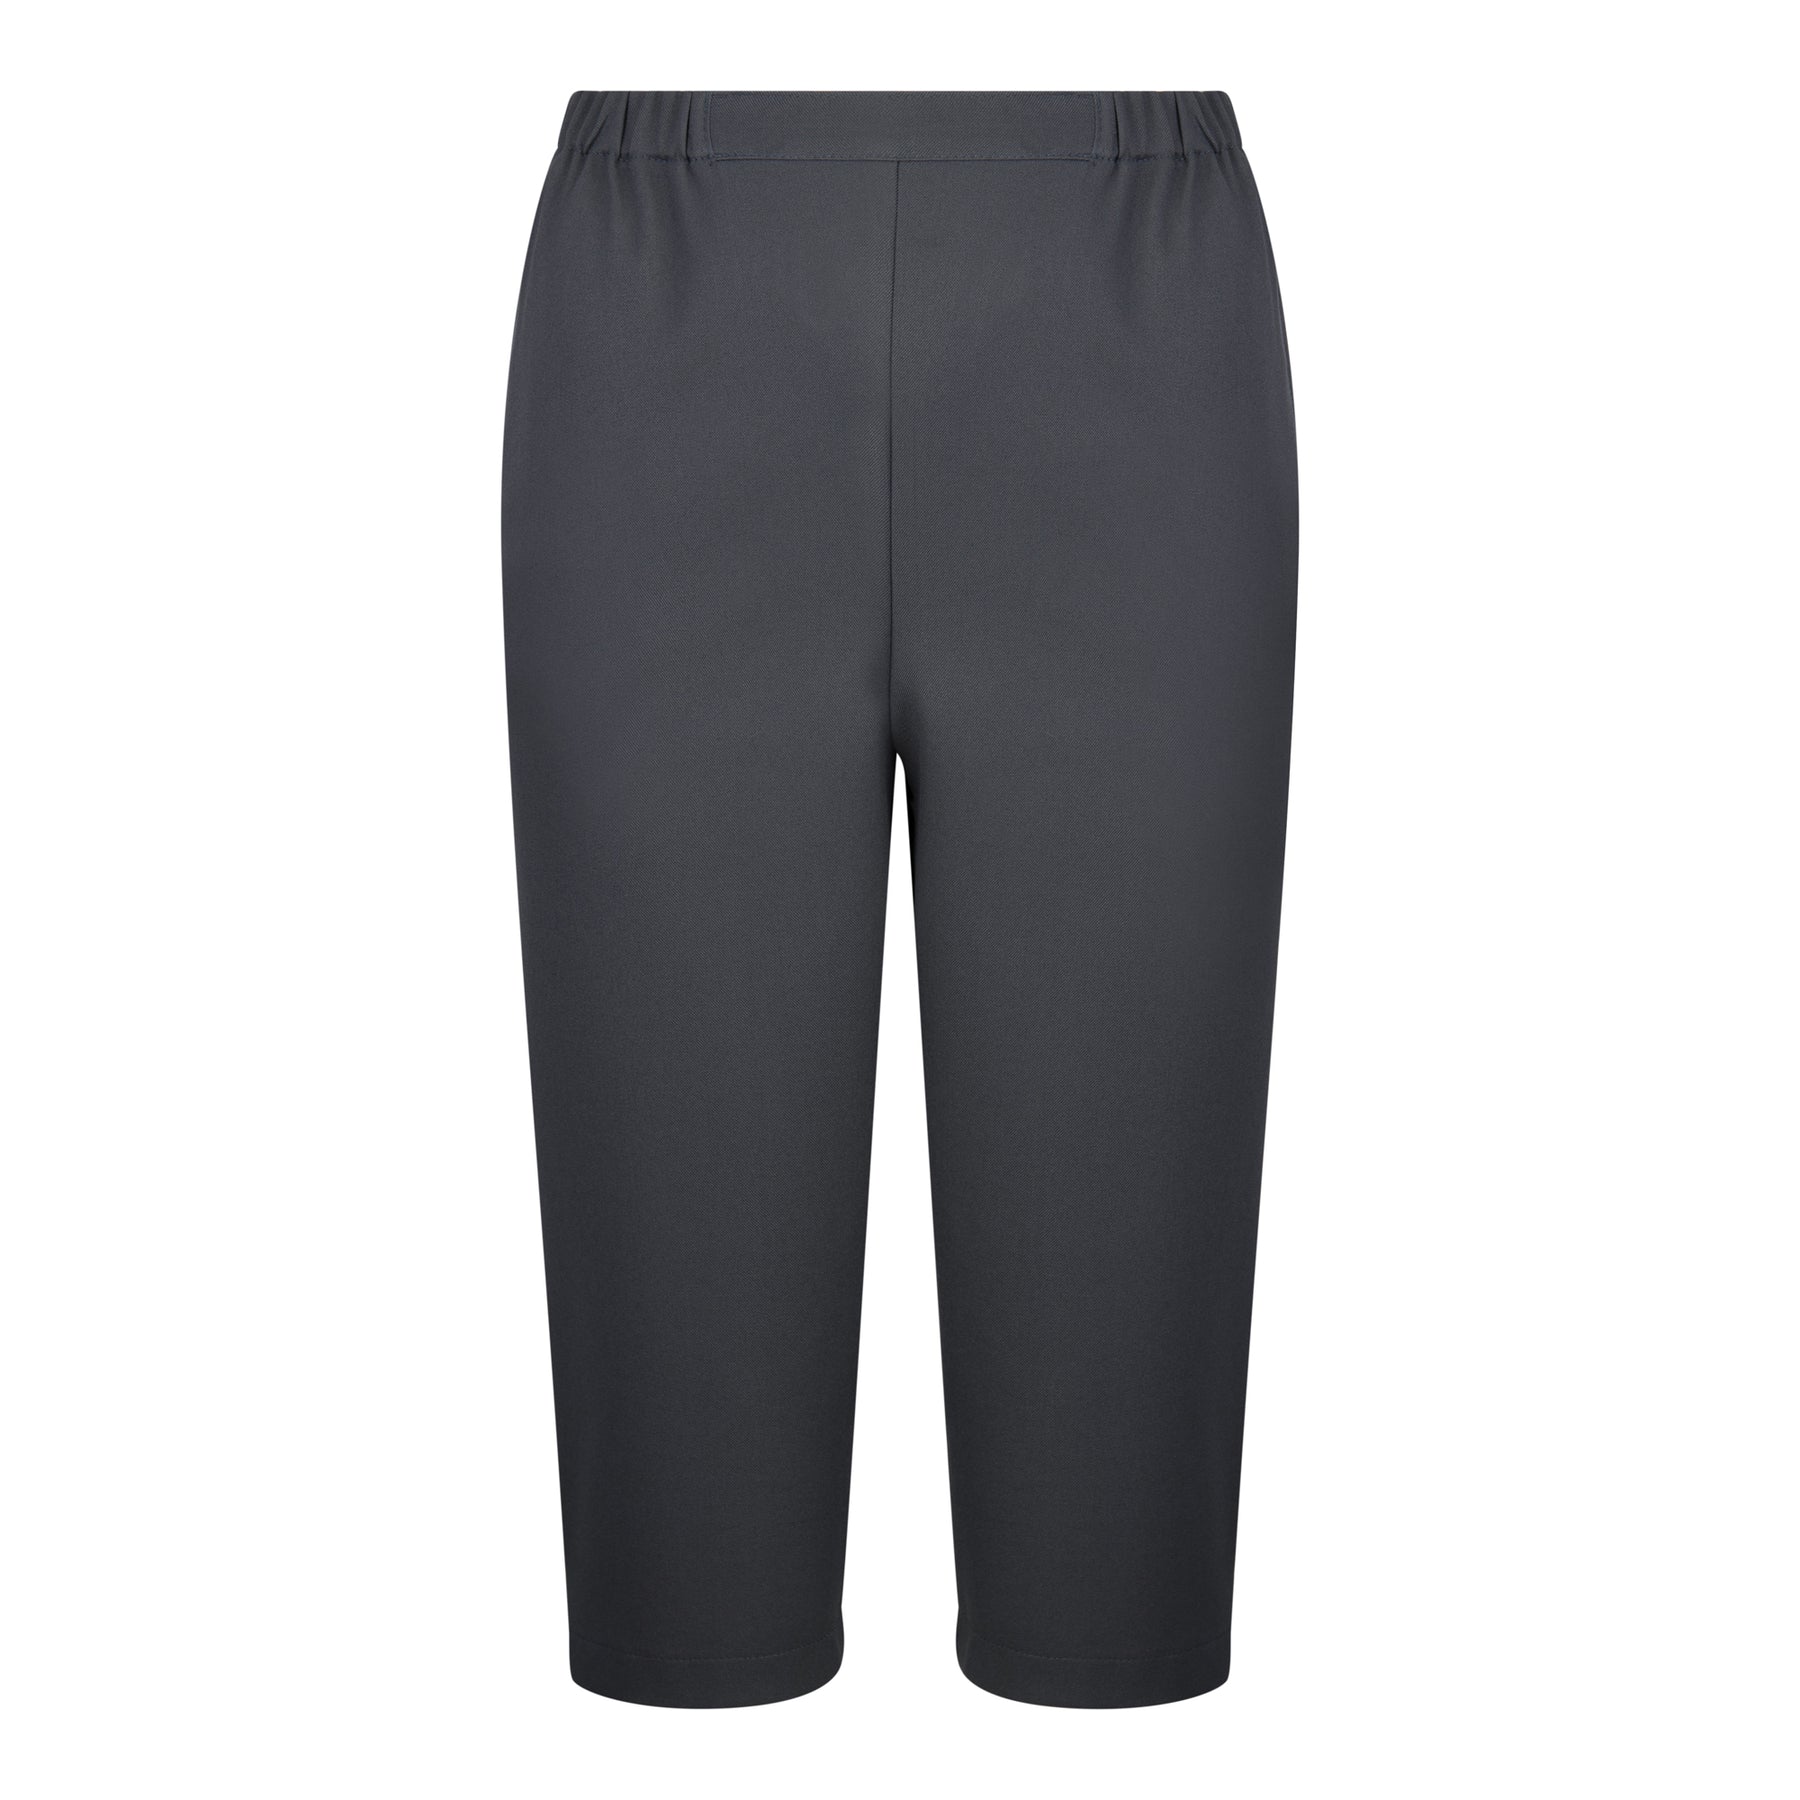 Aceit Ladies 3/4 Bowls Trousers – Aceit Sportswear Pty Ltd